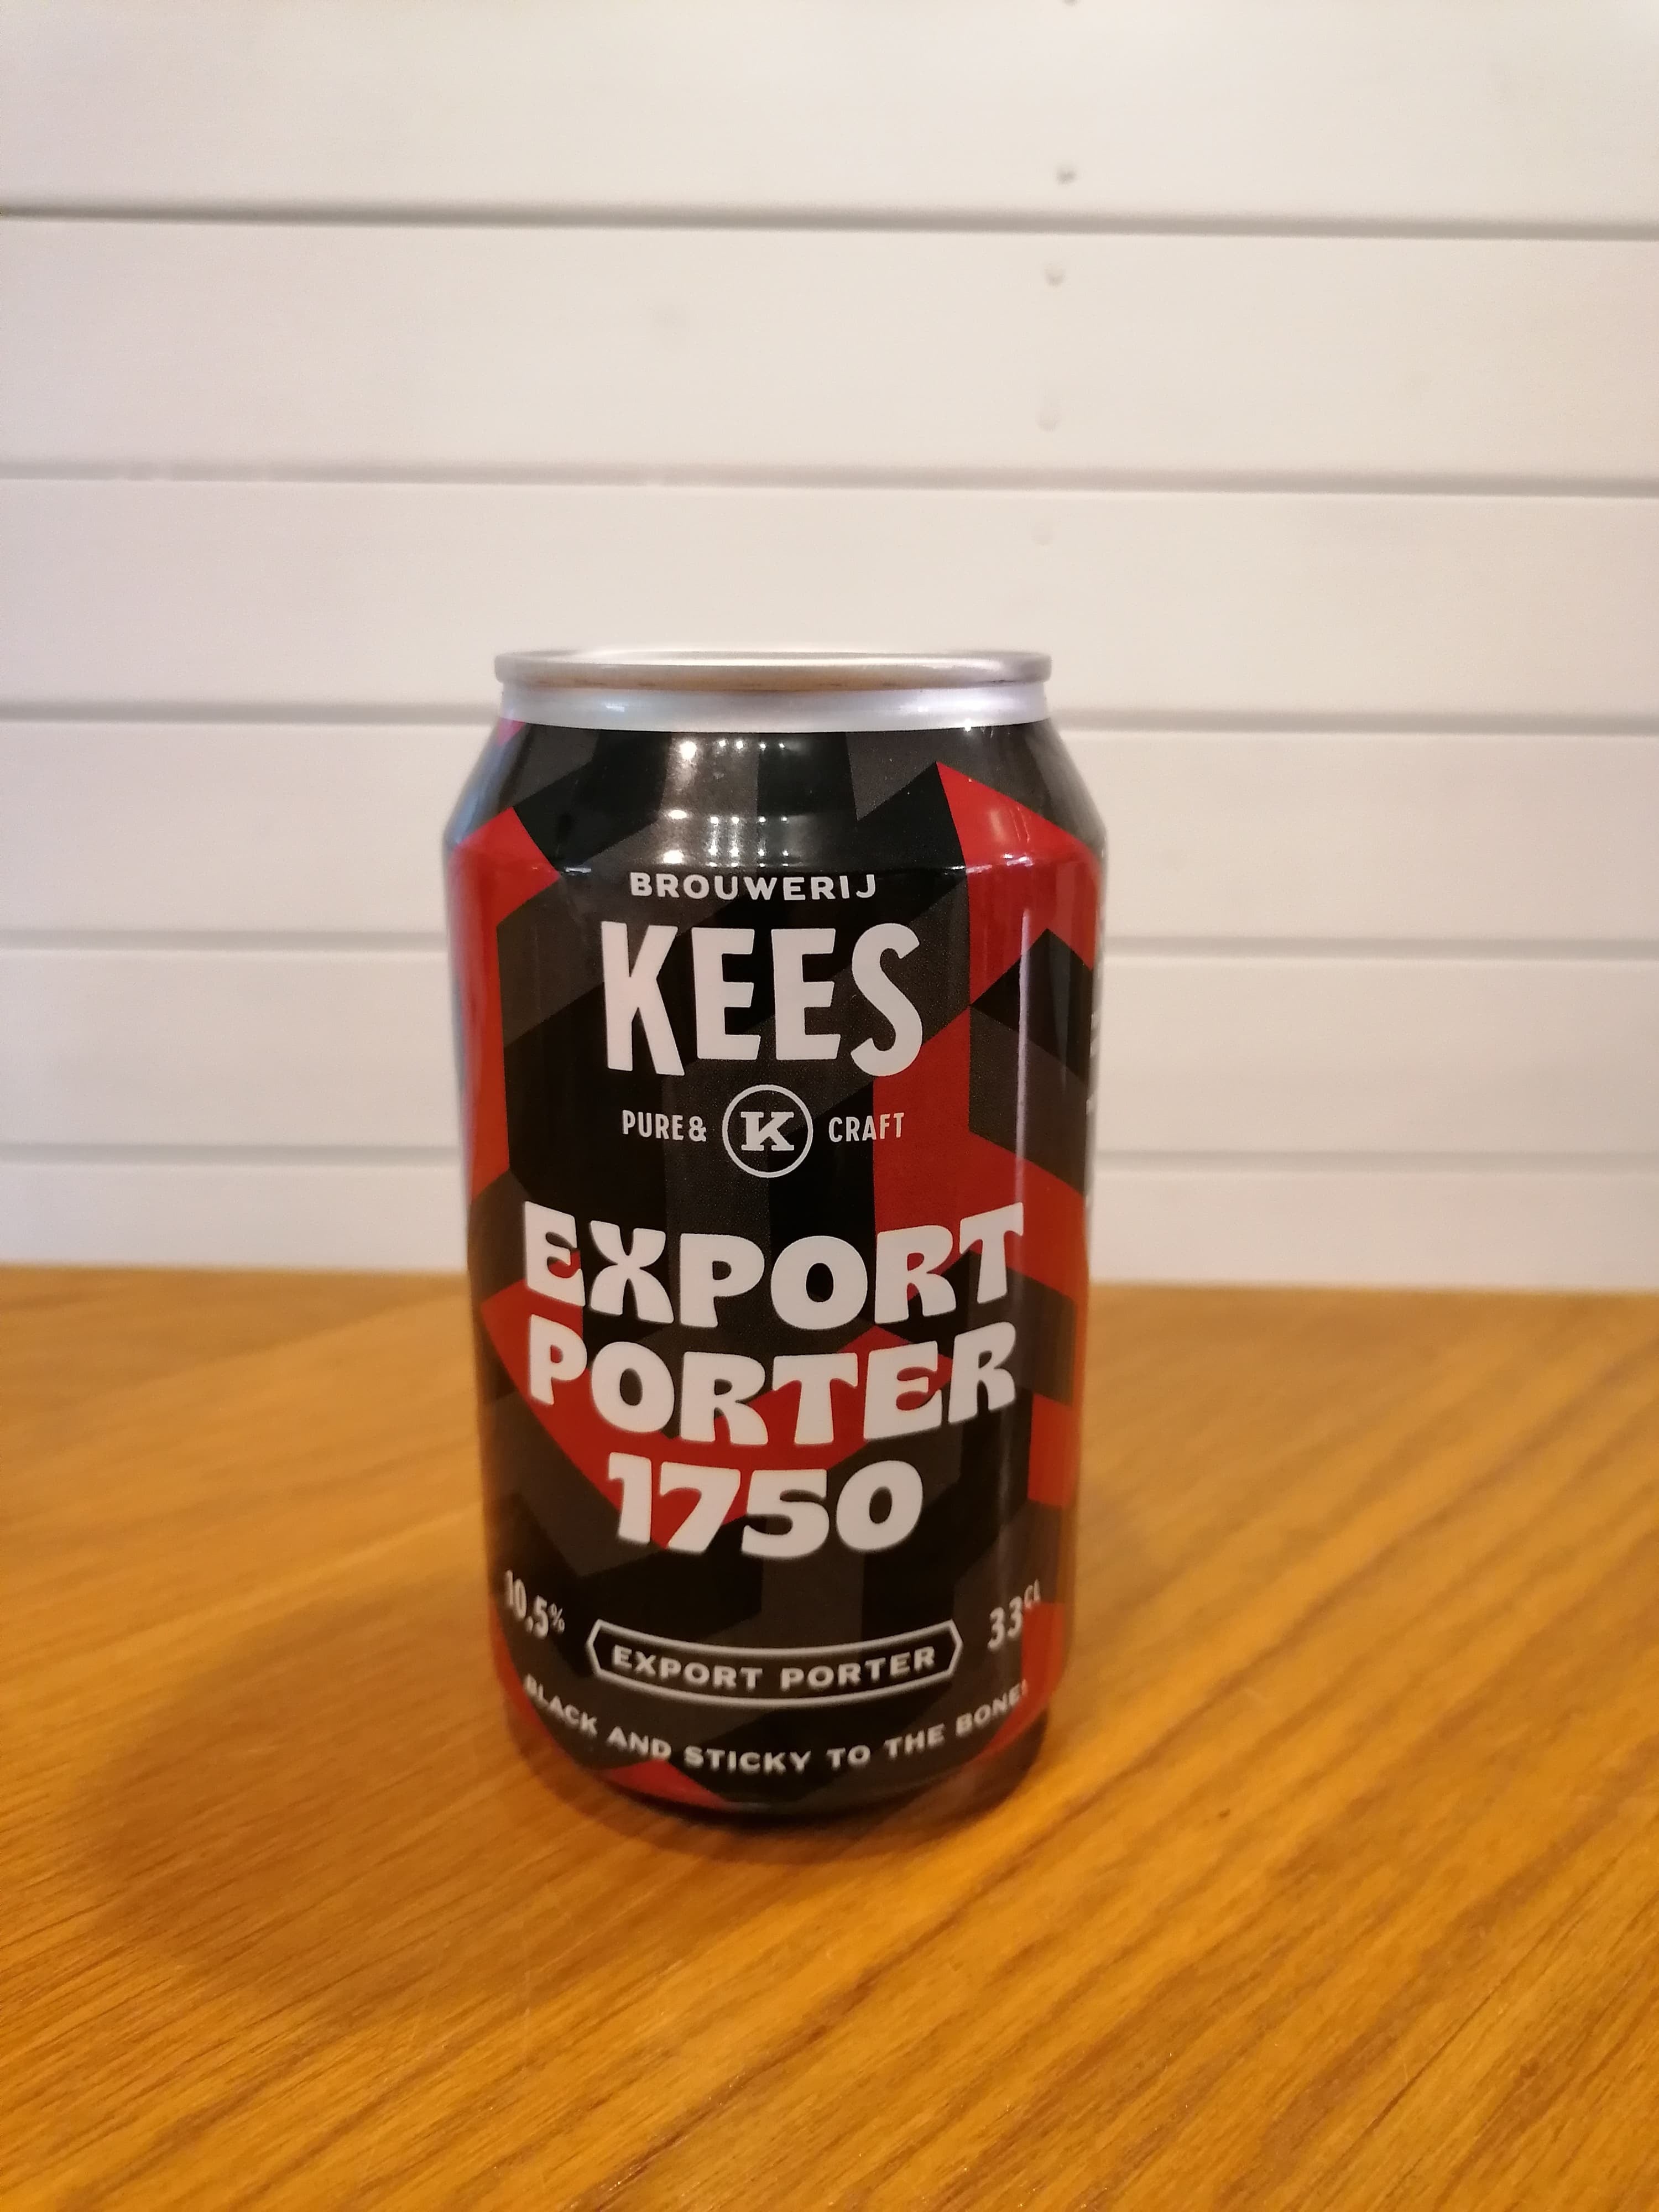 Brug Export porter 1750 (33cl / 10,5%) - Brouwerij Kees, Holland til en forbedret oplevelse